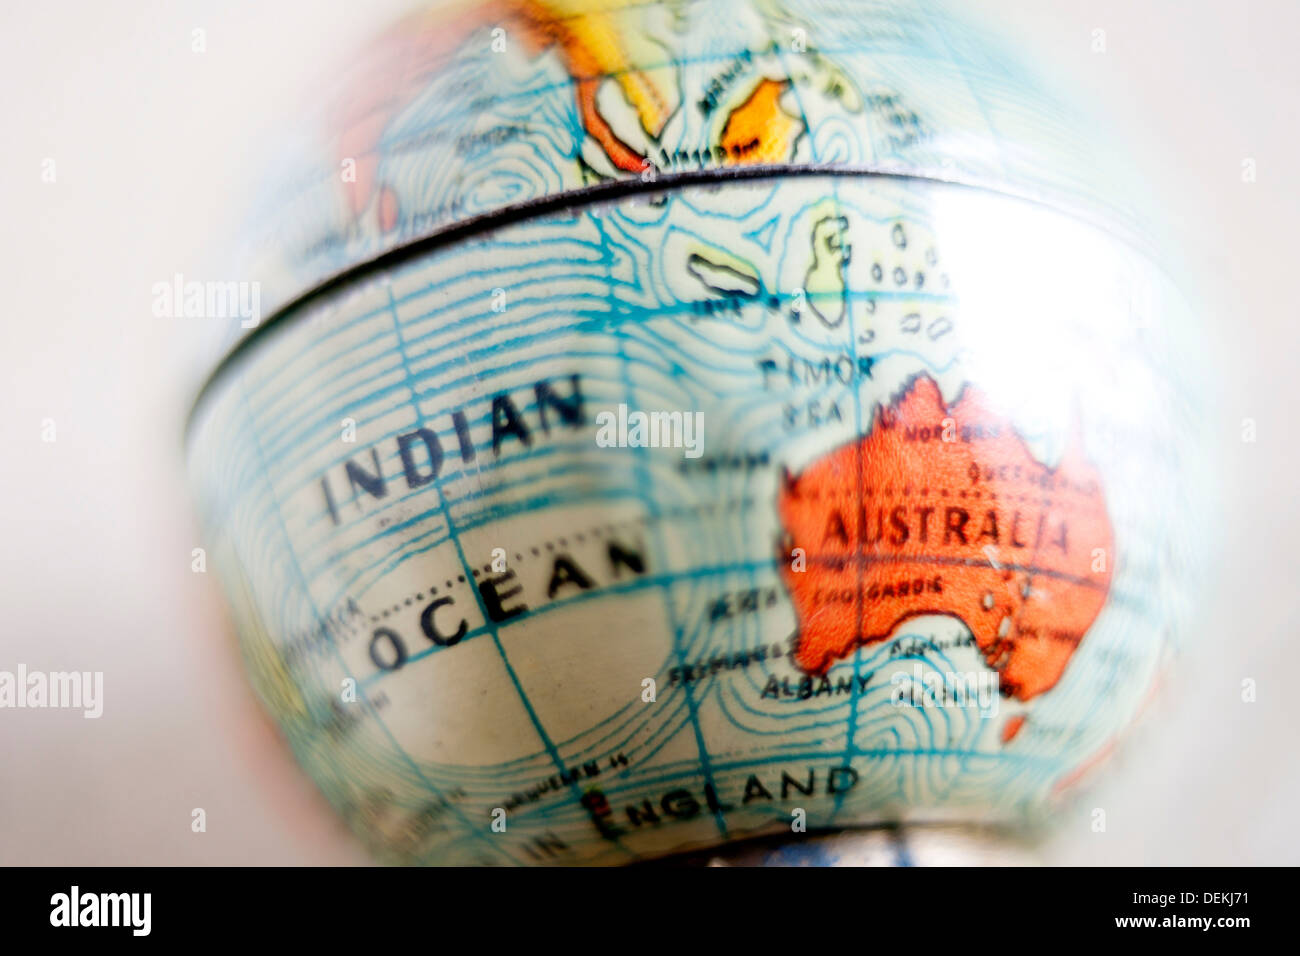 Bola del Mundo, globo terraqueo, cinco continentes, Oceano Indico, Australia, Oceania situación, ubicación, viaje viajar, Foto Stock